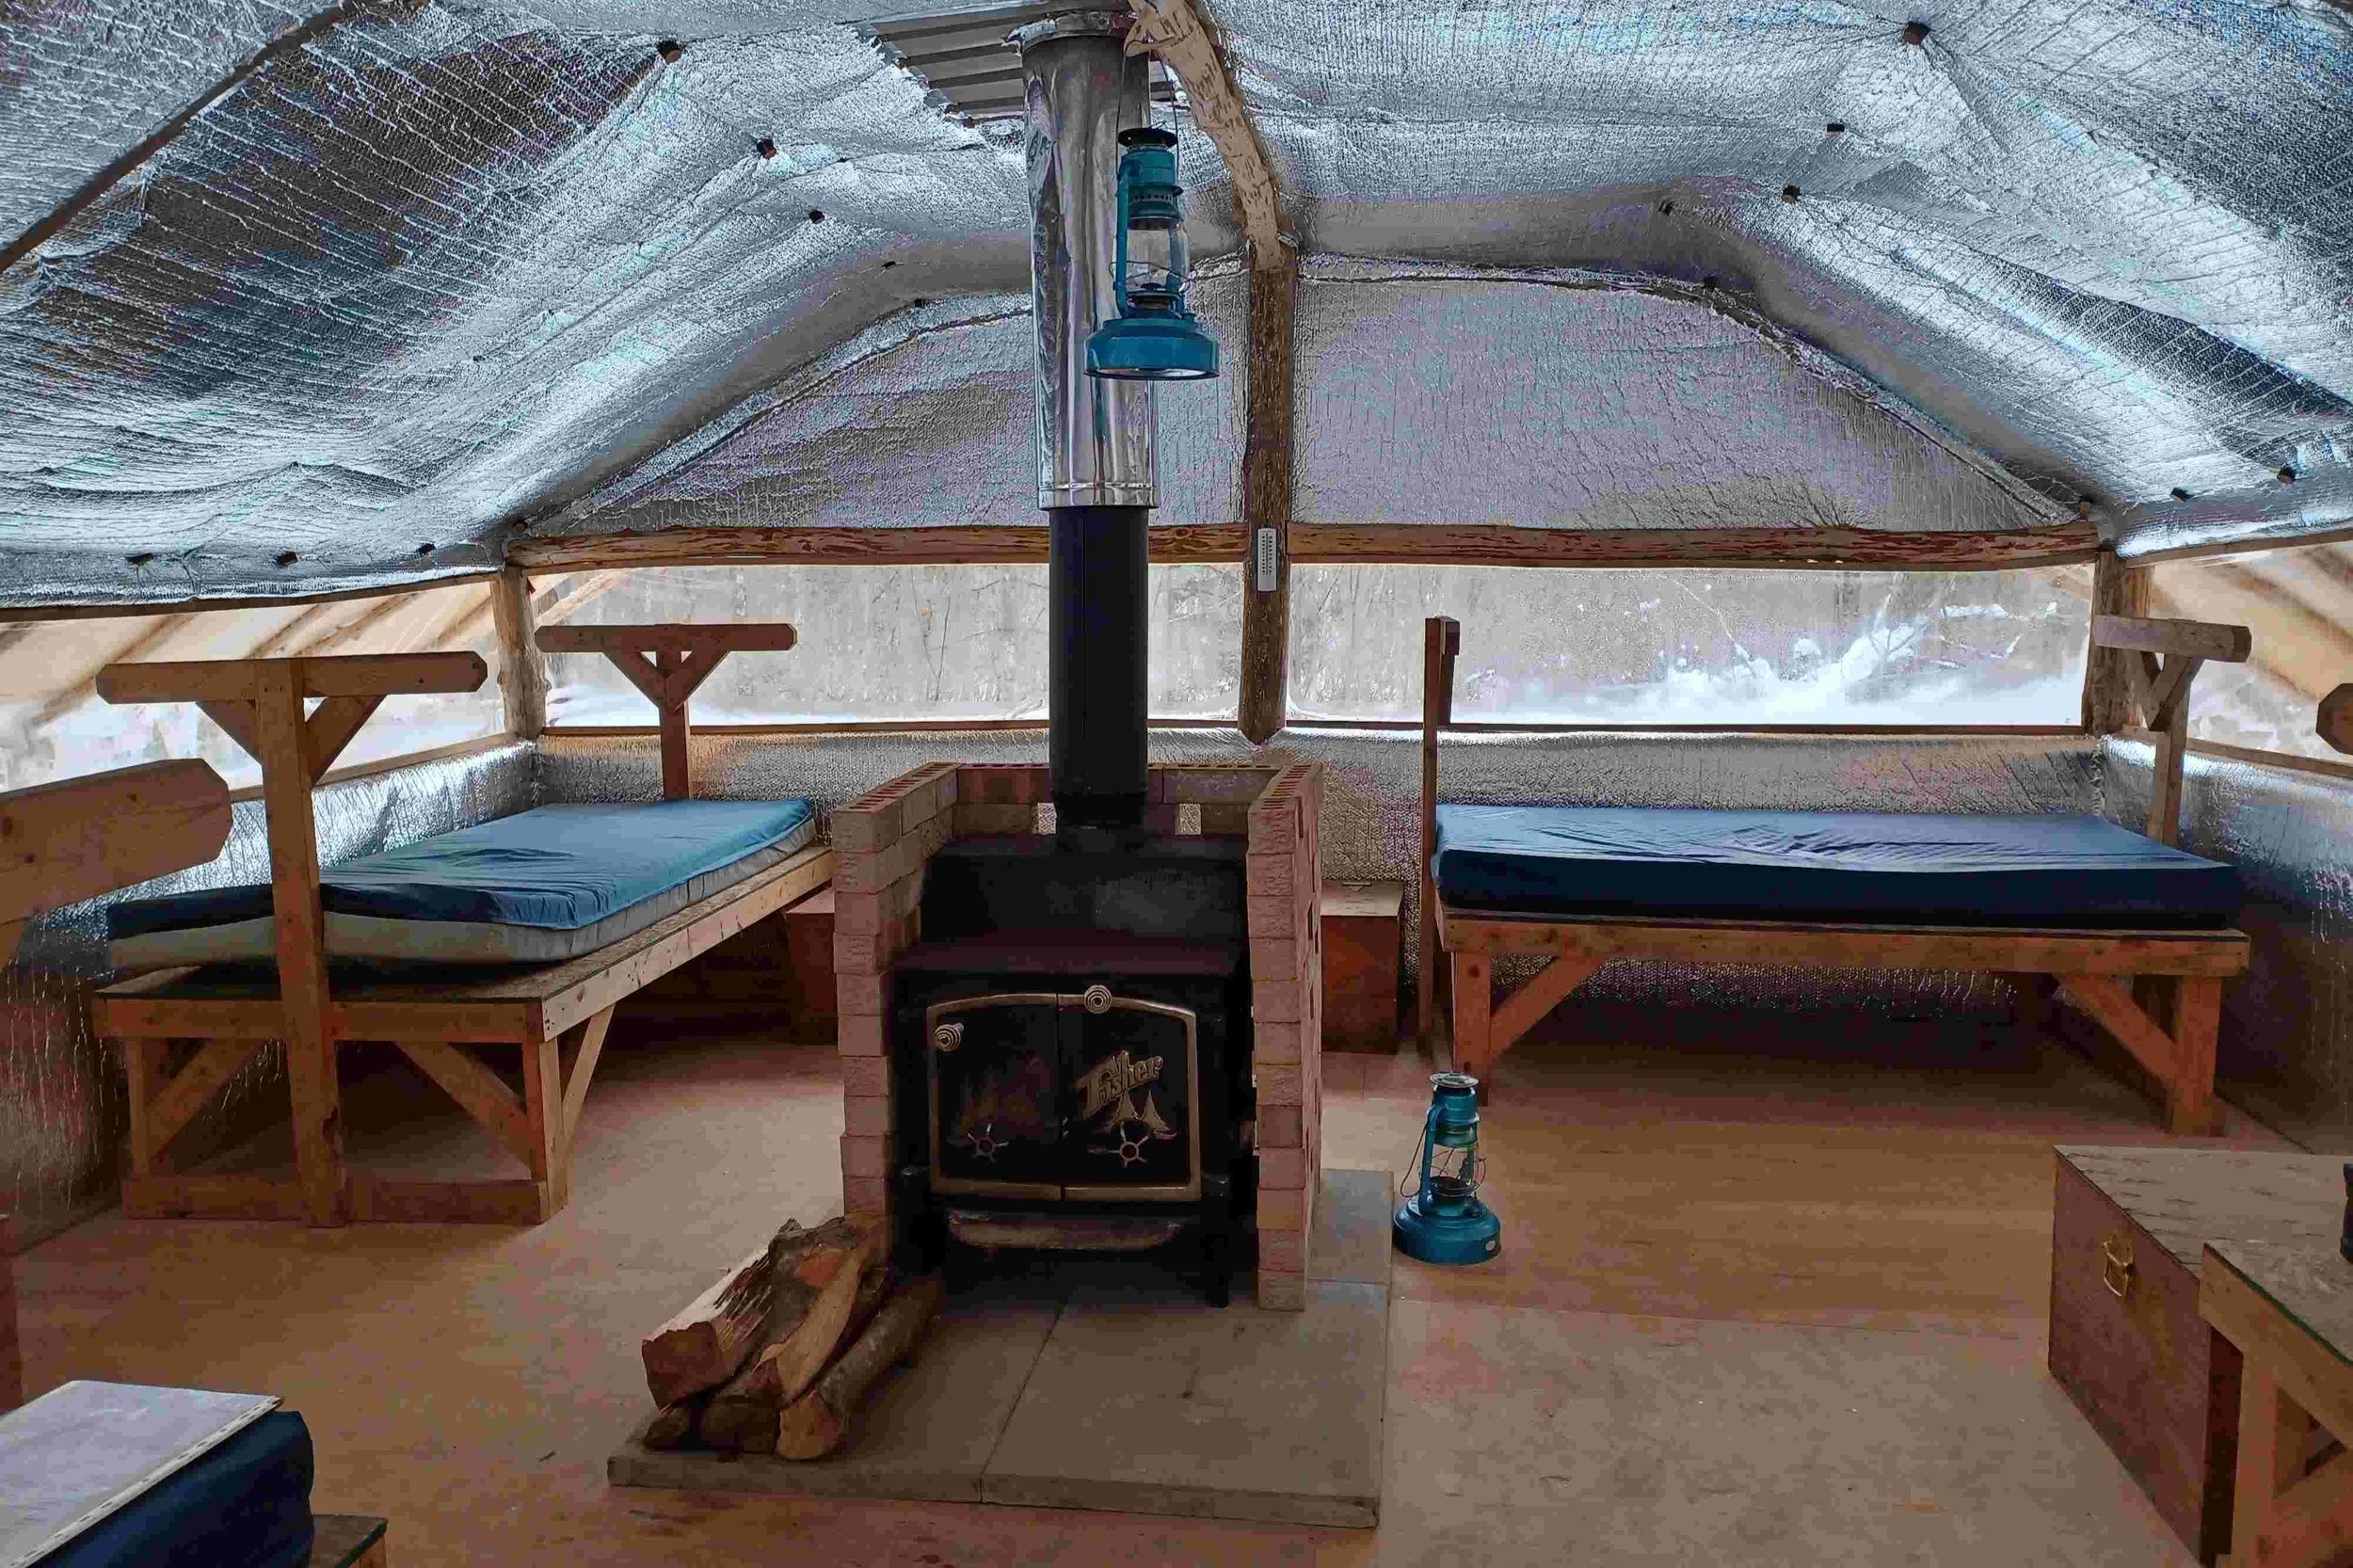 Inside a winterized tent